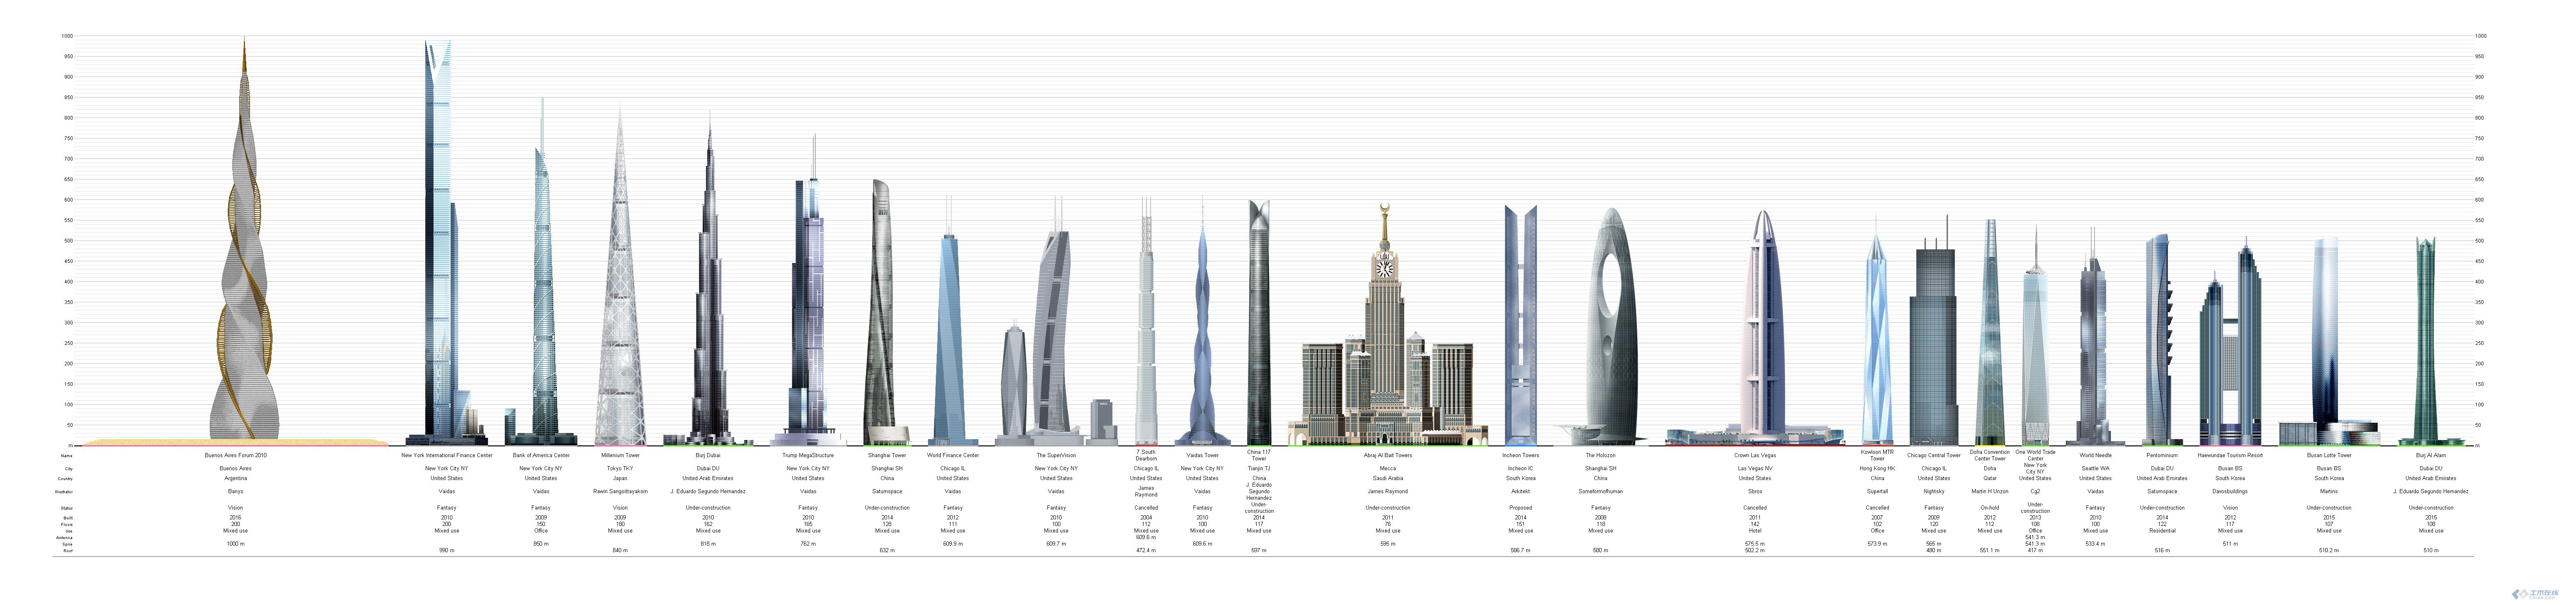 2000年后的超高层建筑 [1] (1000-200)-1-1.jpg